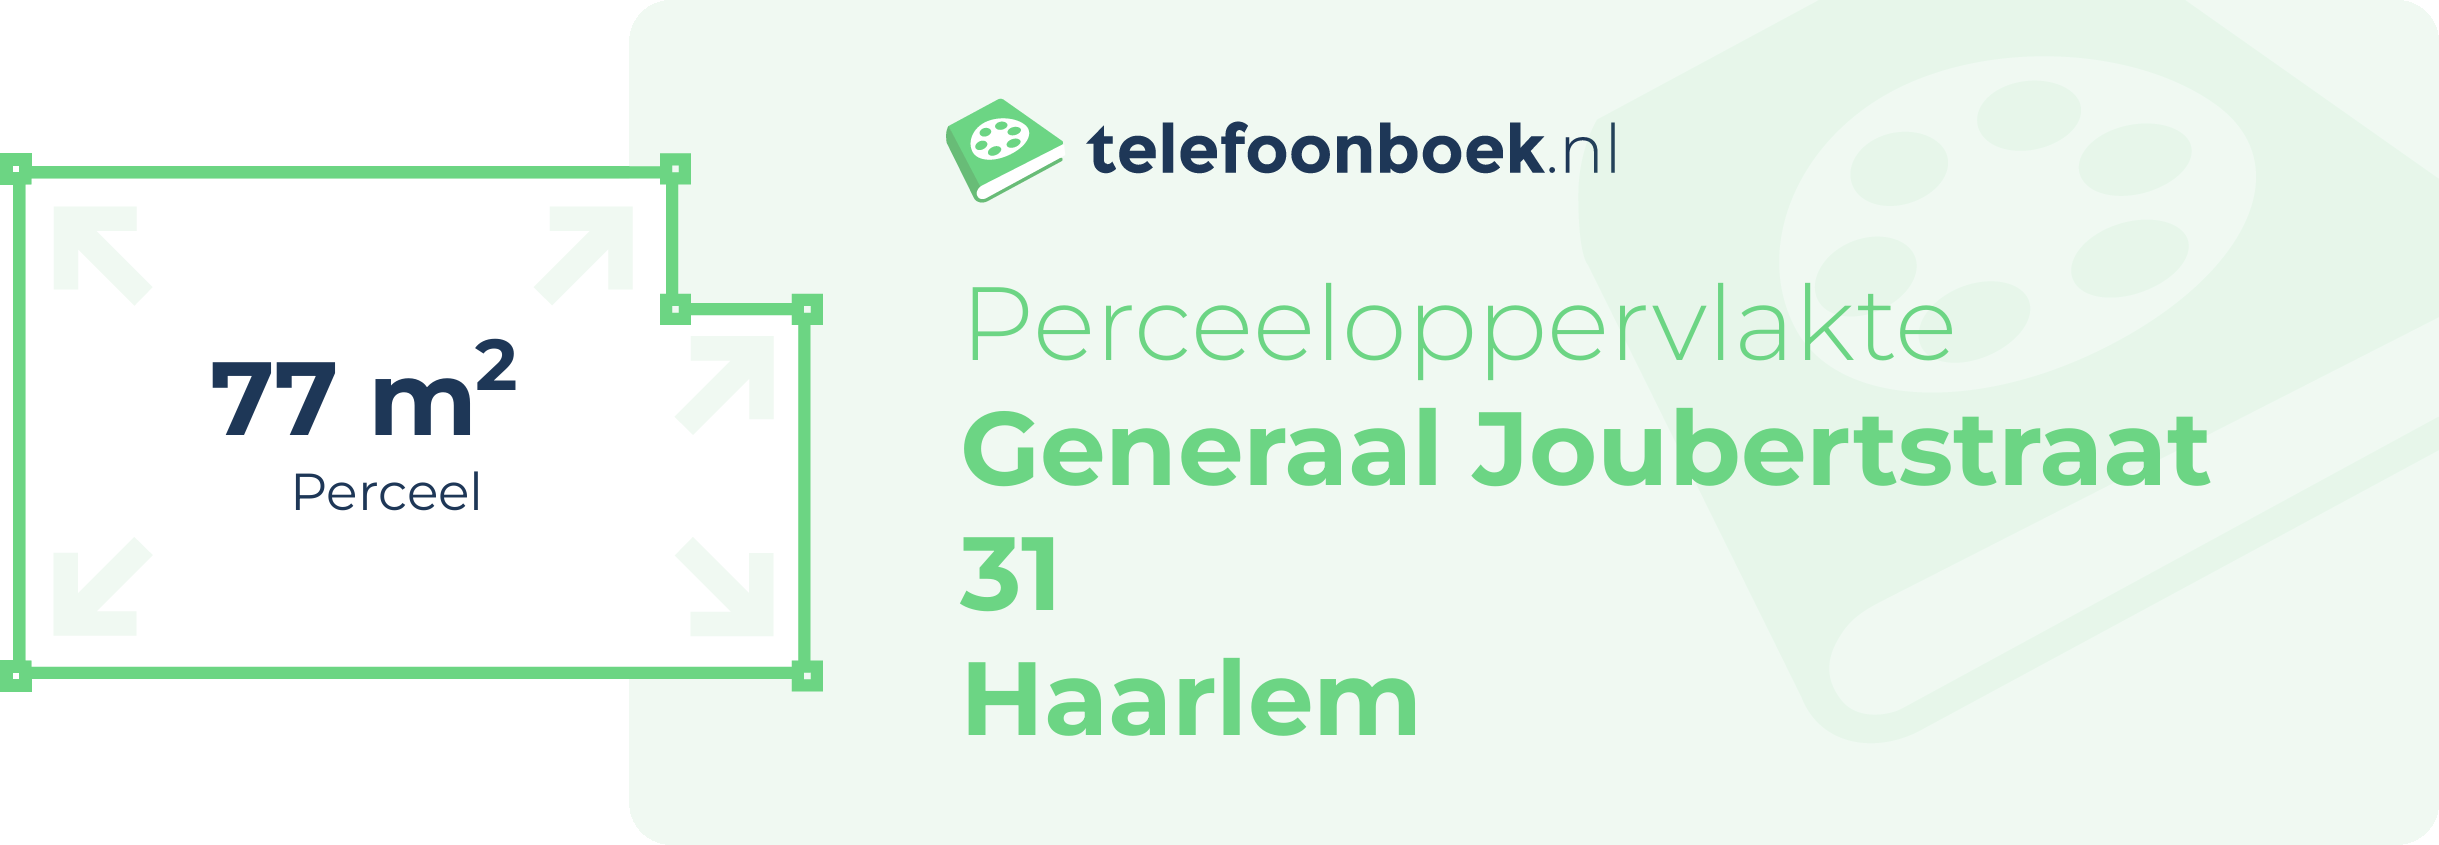 Perceeloppervlakte Generaal Joubertstraat 31 Haarlem